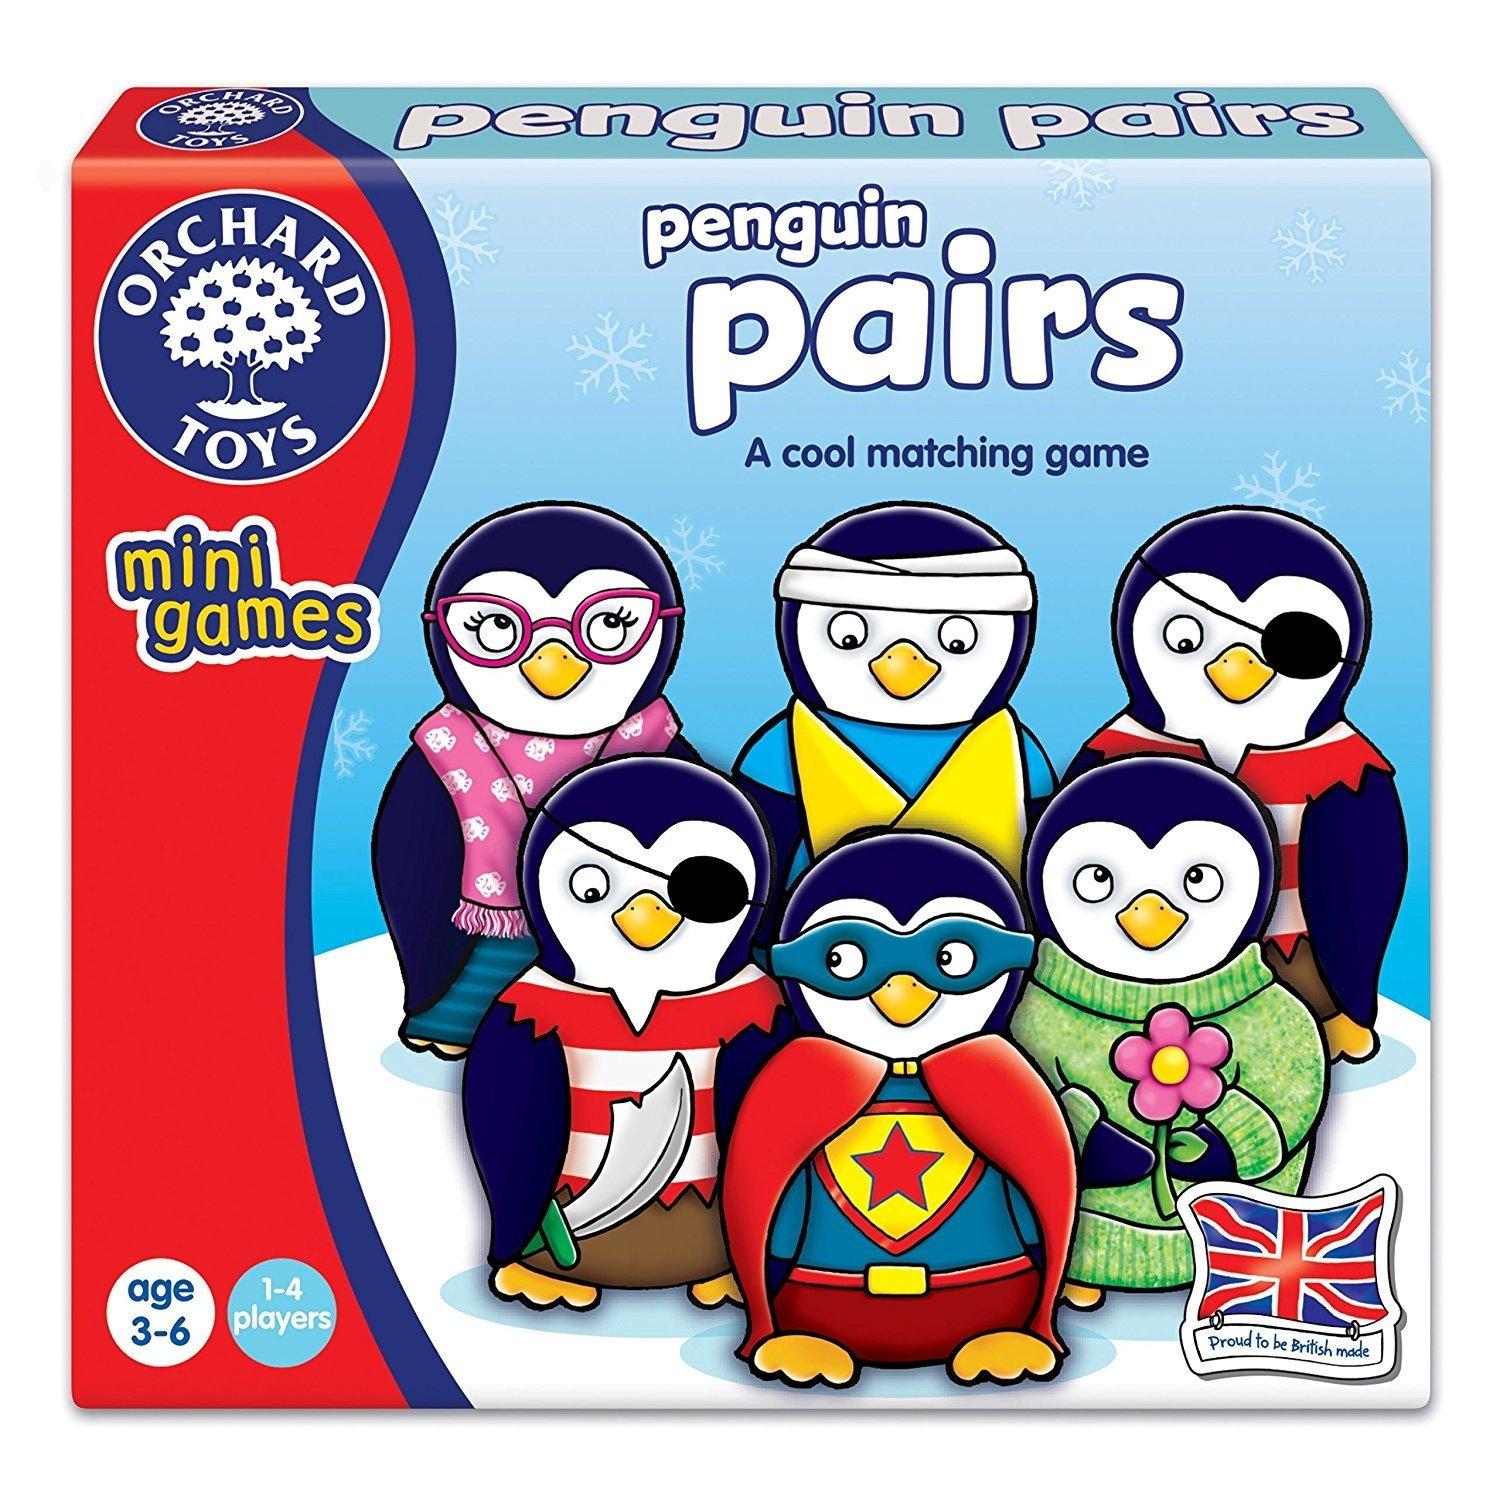 Penguin Pairs